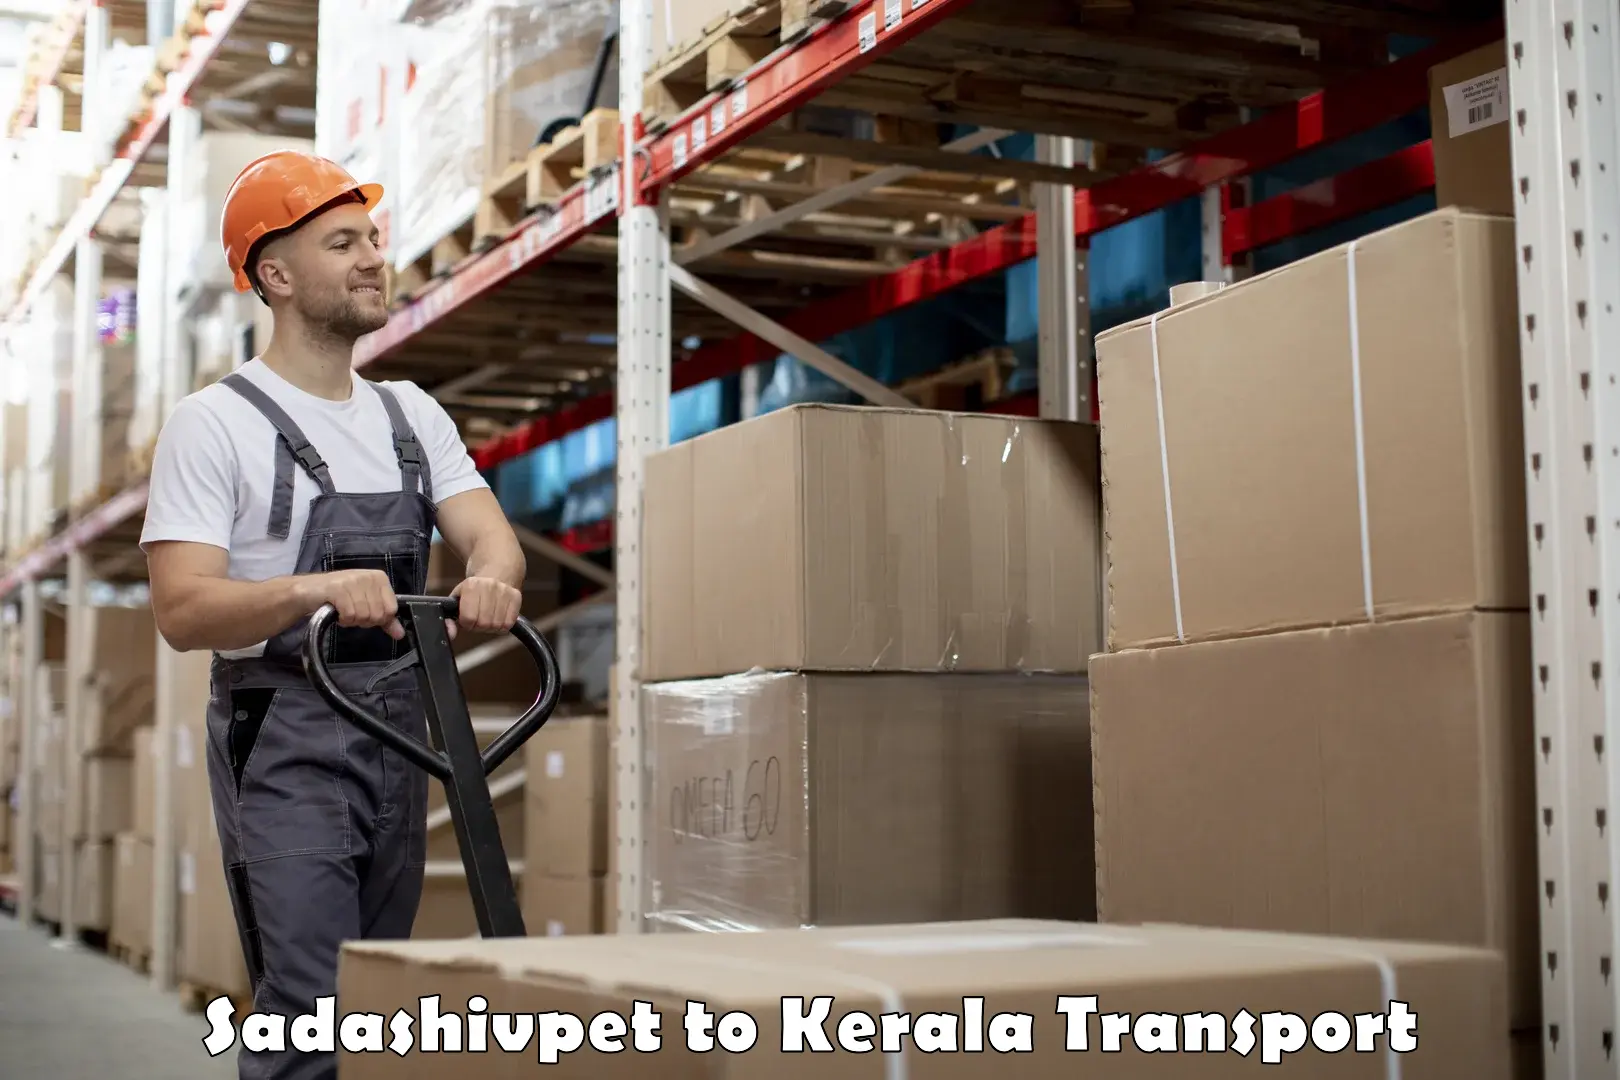 All India transport service Sadashivpet to Kumily